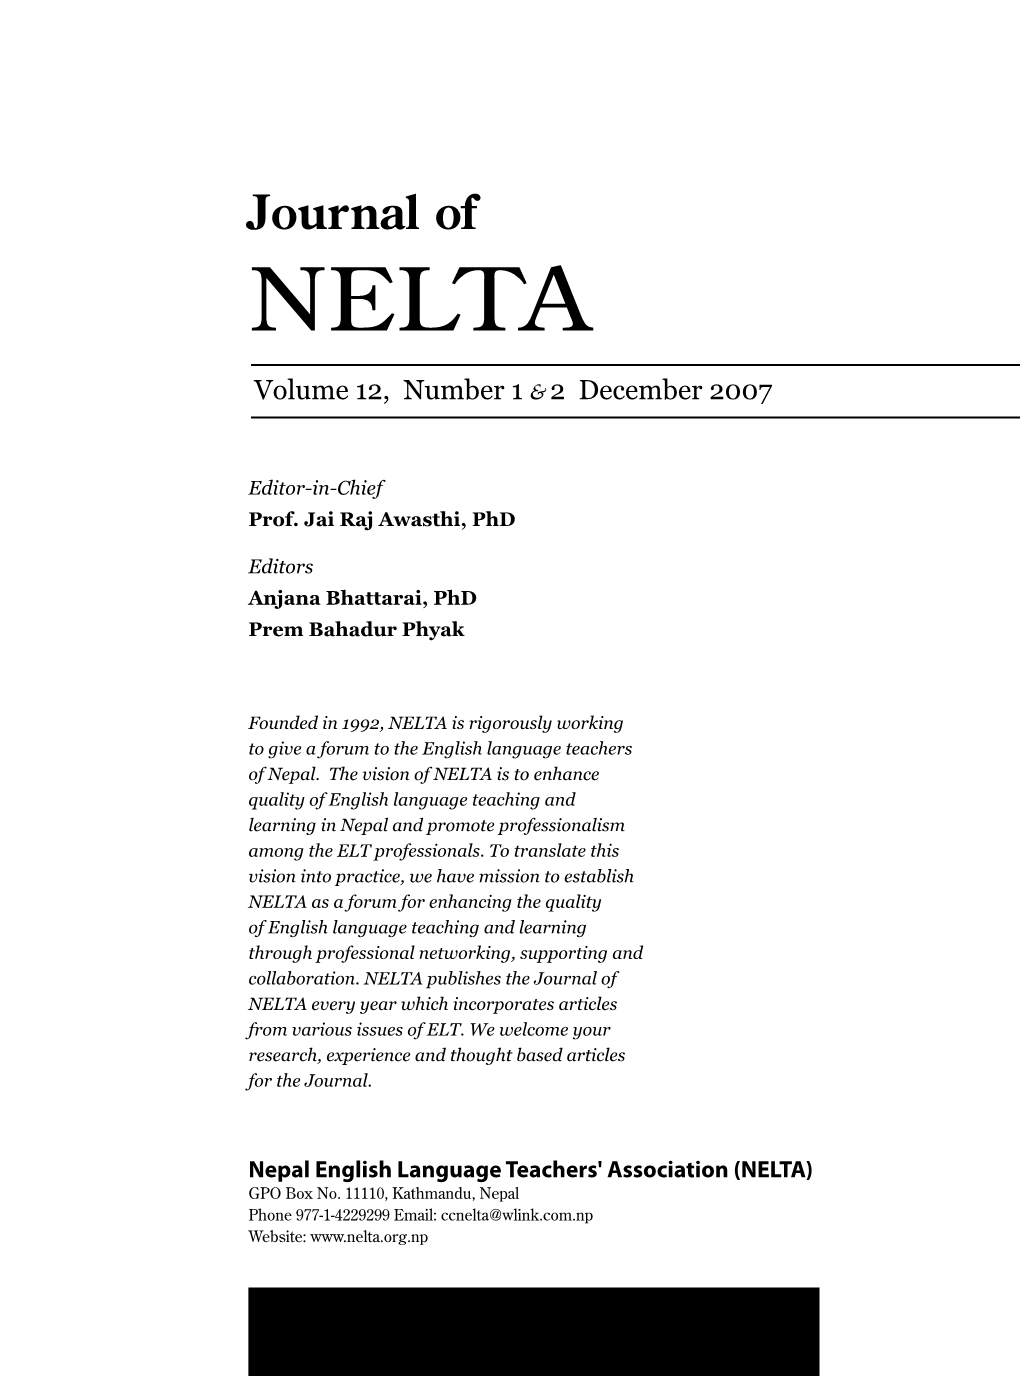 Journal of NELTA